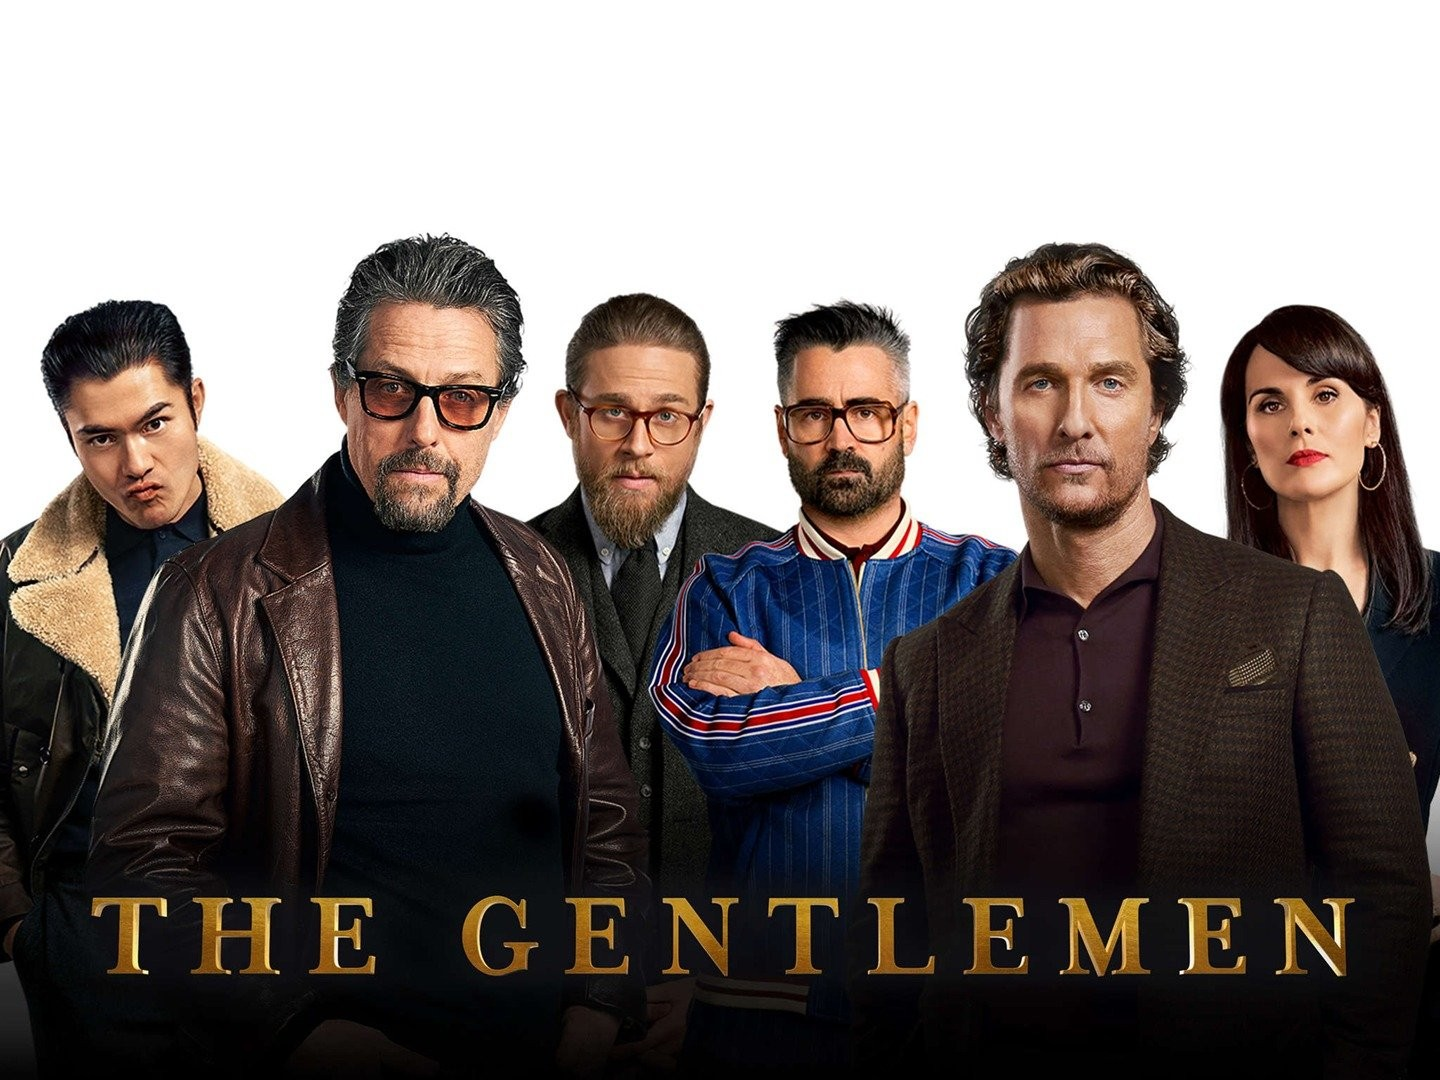 The Gentlemen season 1: Release Date, Cast, Trailer, Plot, where to watch?